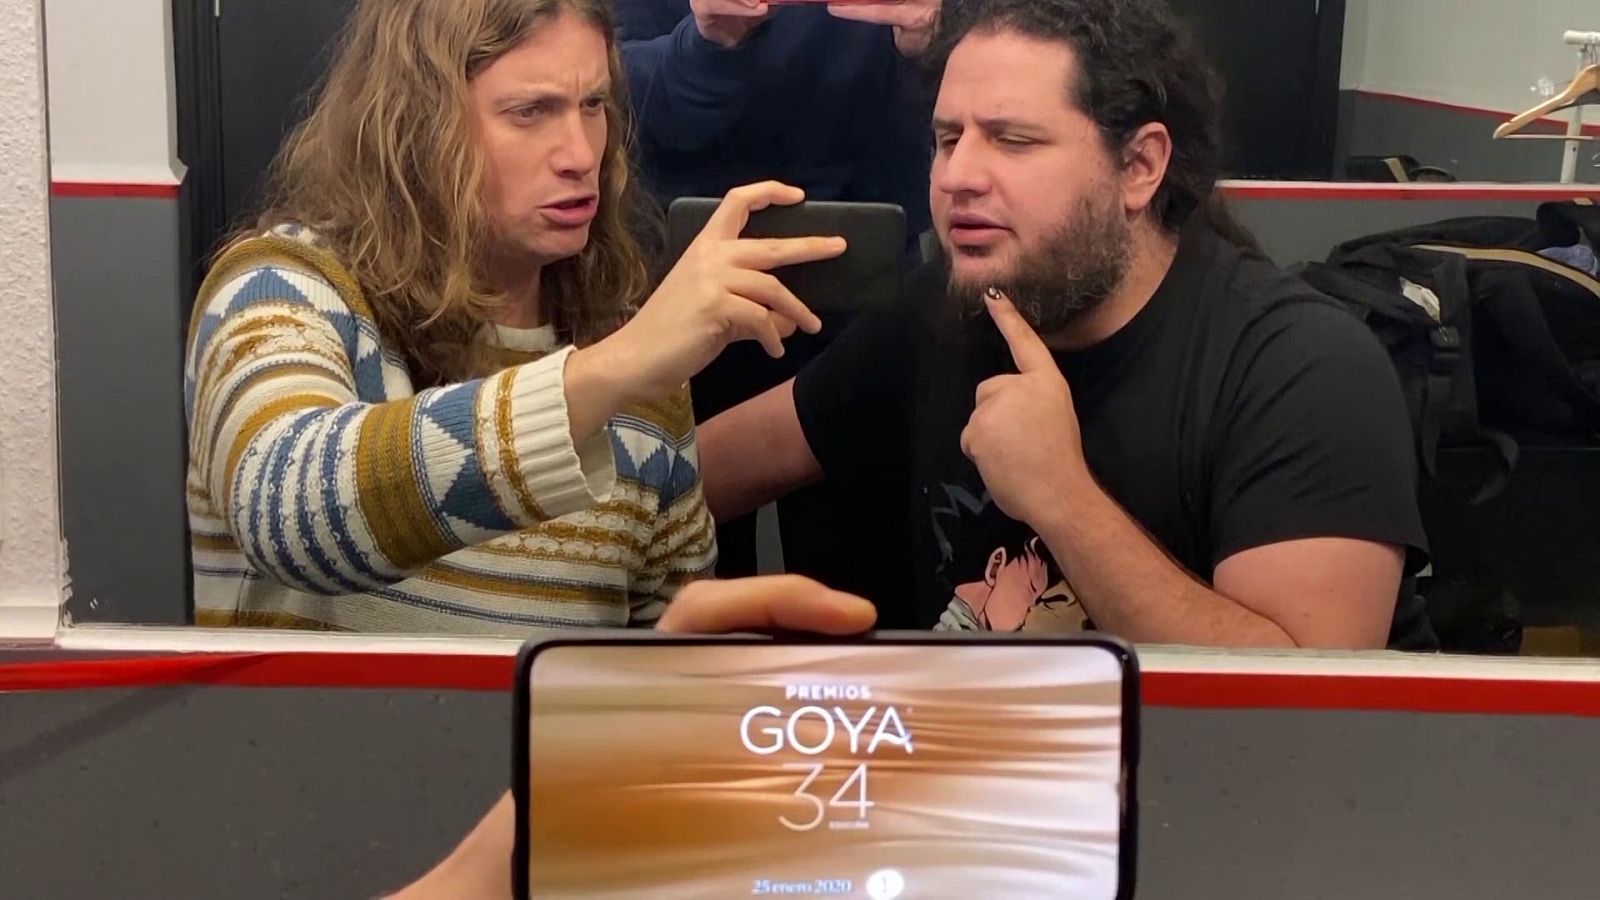 Los Goya | Llegan los Premios Goya más gamberros con Grison, Jaime Caravaca y Álex Pinacho: los gayos golfxs